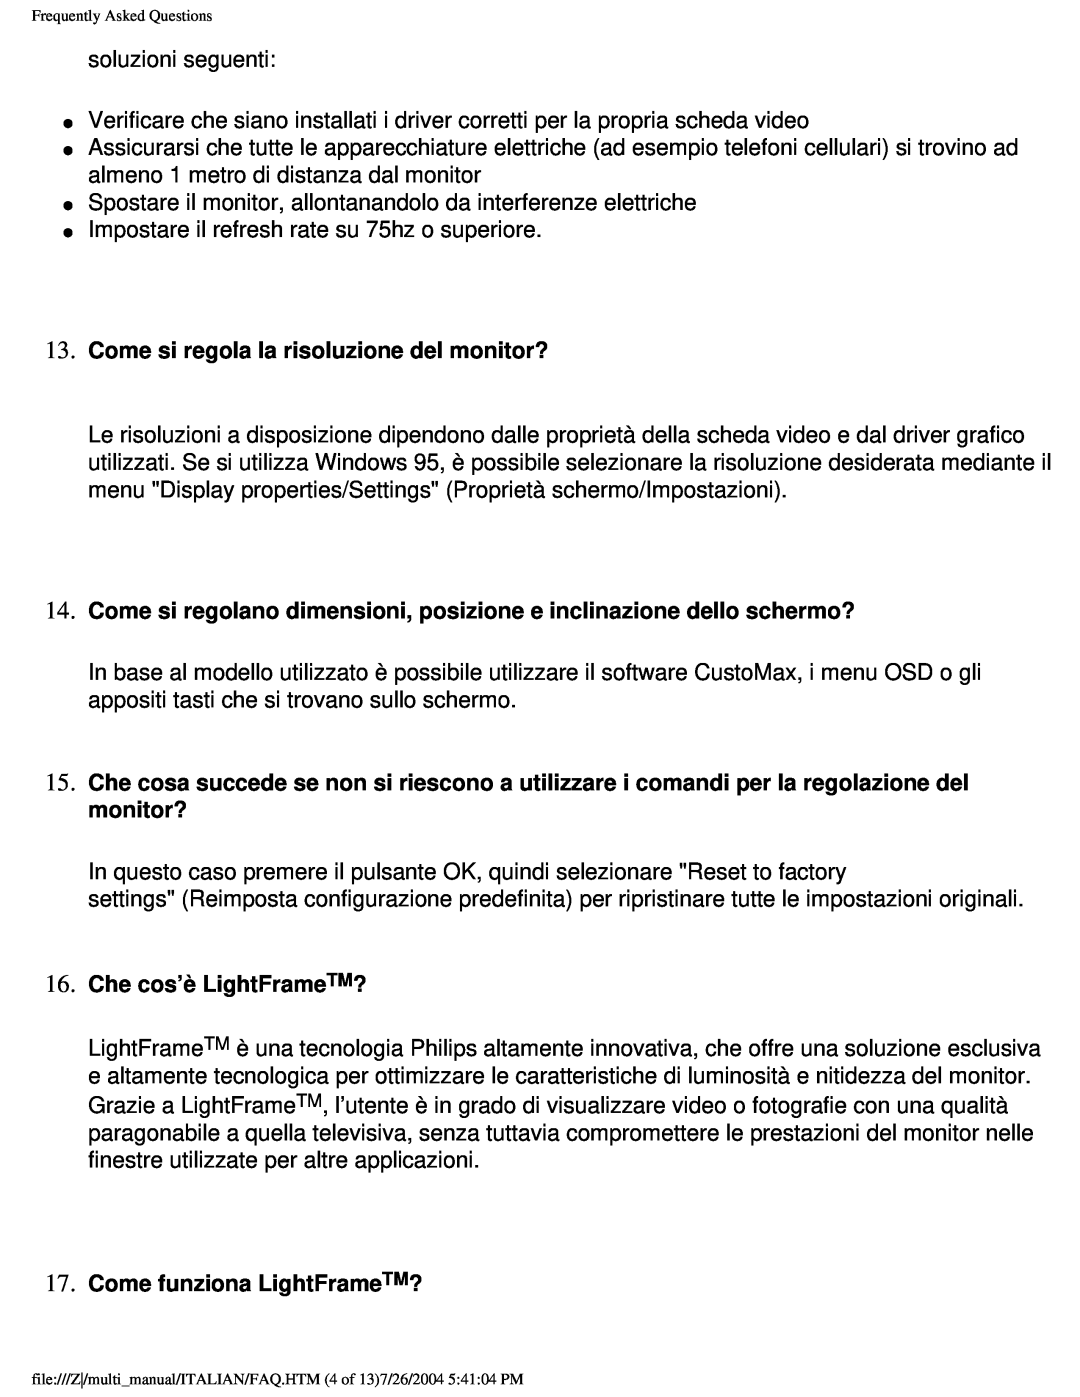 Philips 201B user manual Come si regola la risoluzione del monitor?, Che cos’è LightFrameTM?, Come funziona LightFrameTM? 